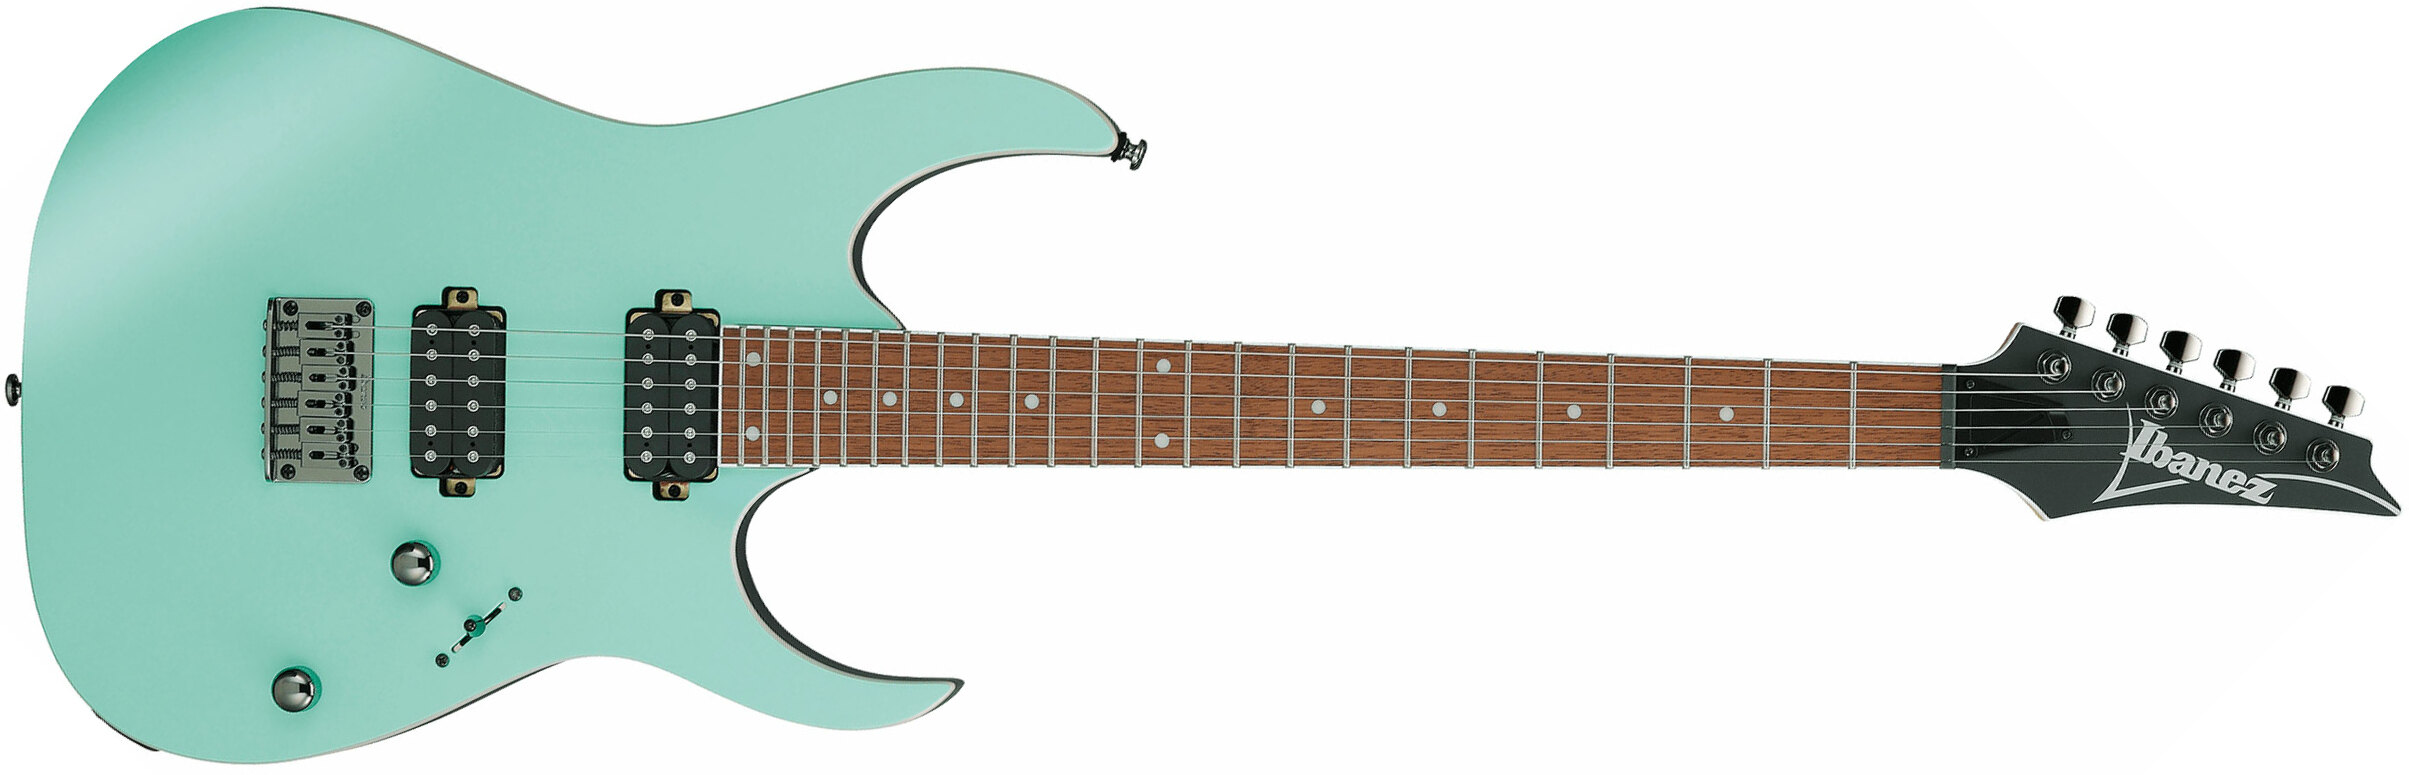 Ibanez Rg421s Sem Standard 2h Ht Ja - Sea Shore Matte - Guitarra eléctrica con forma de str. - Main picture